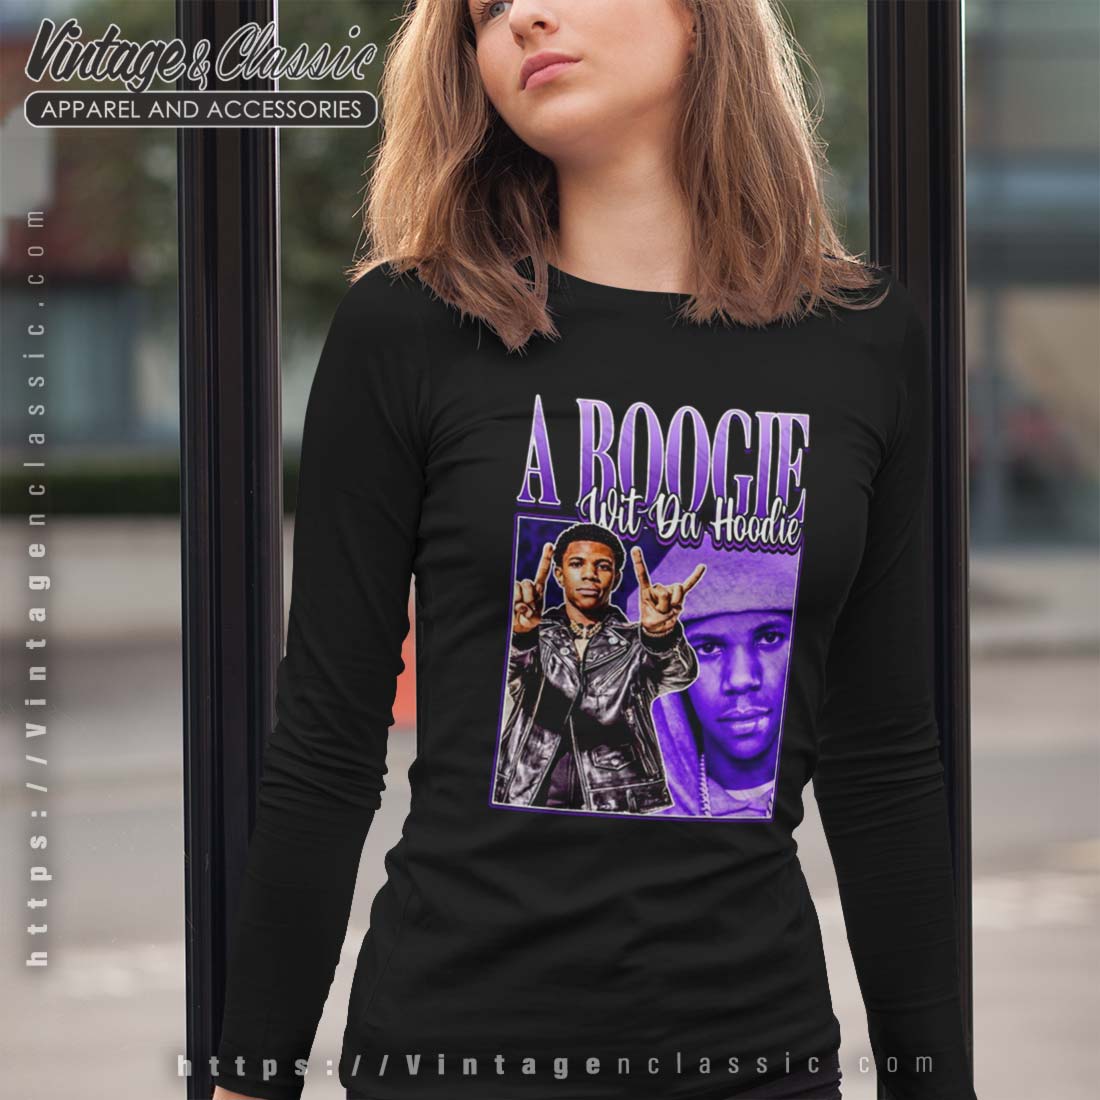 A Boogie Wit Da Hoodie Png, Rap Bootleg T-shirt Design,300 DPI,2